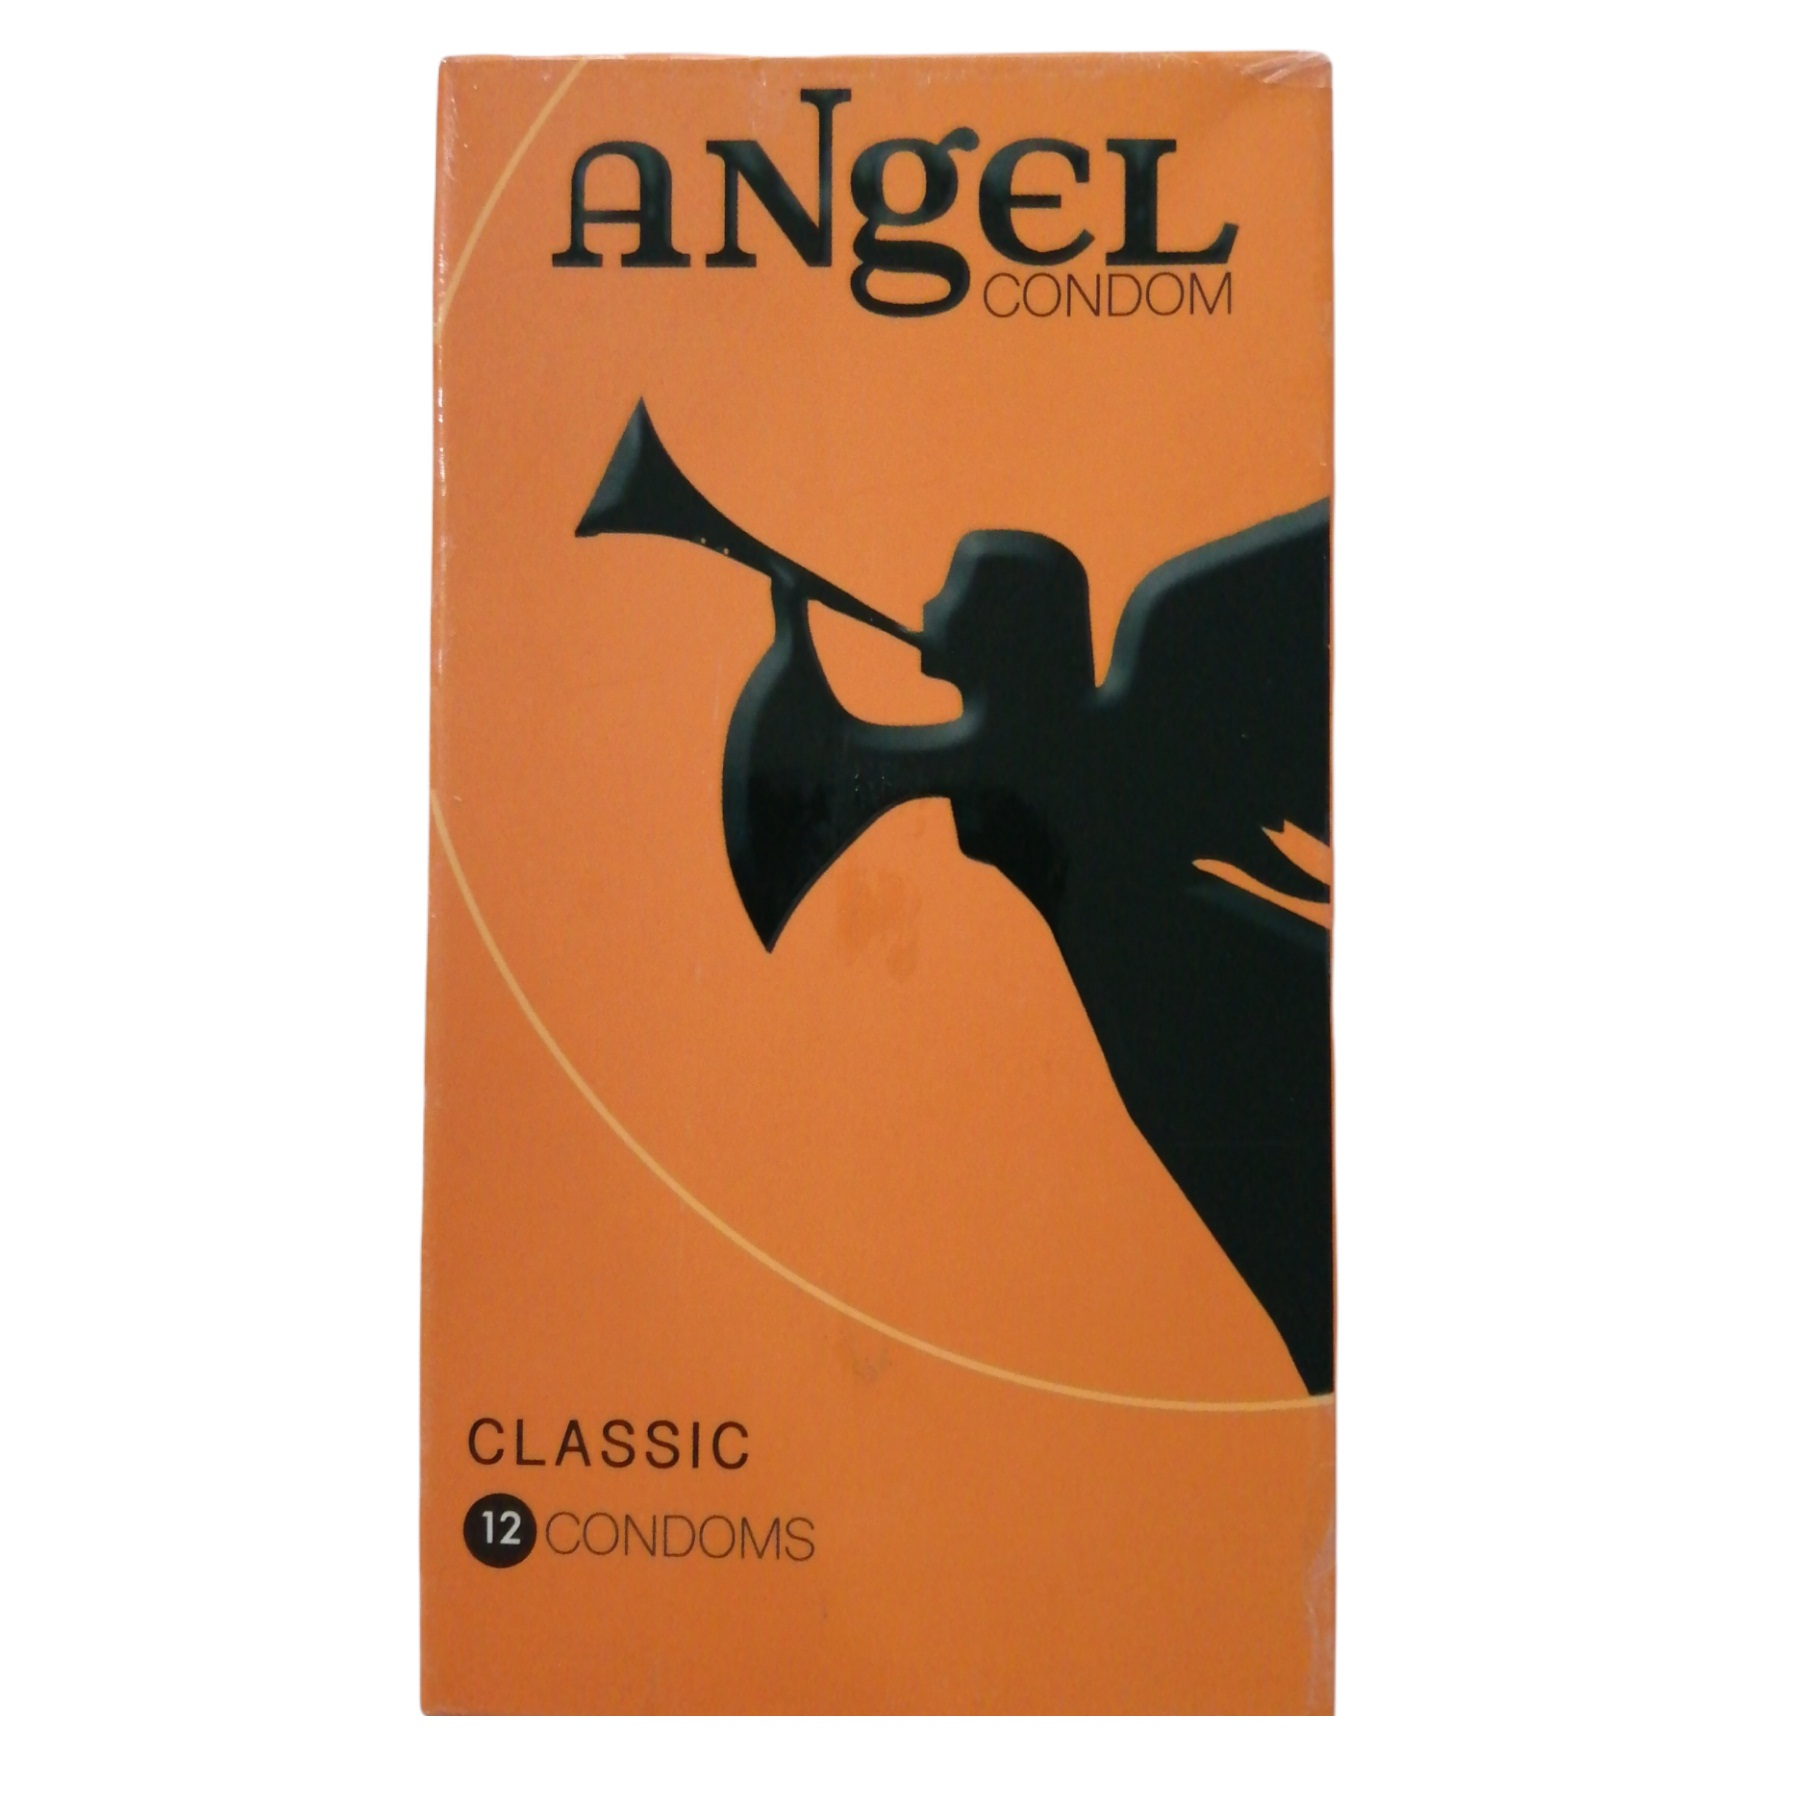 کاندوم انجل مدل Classic بسته 12 عددی